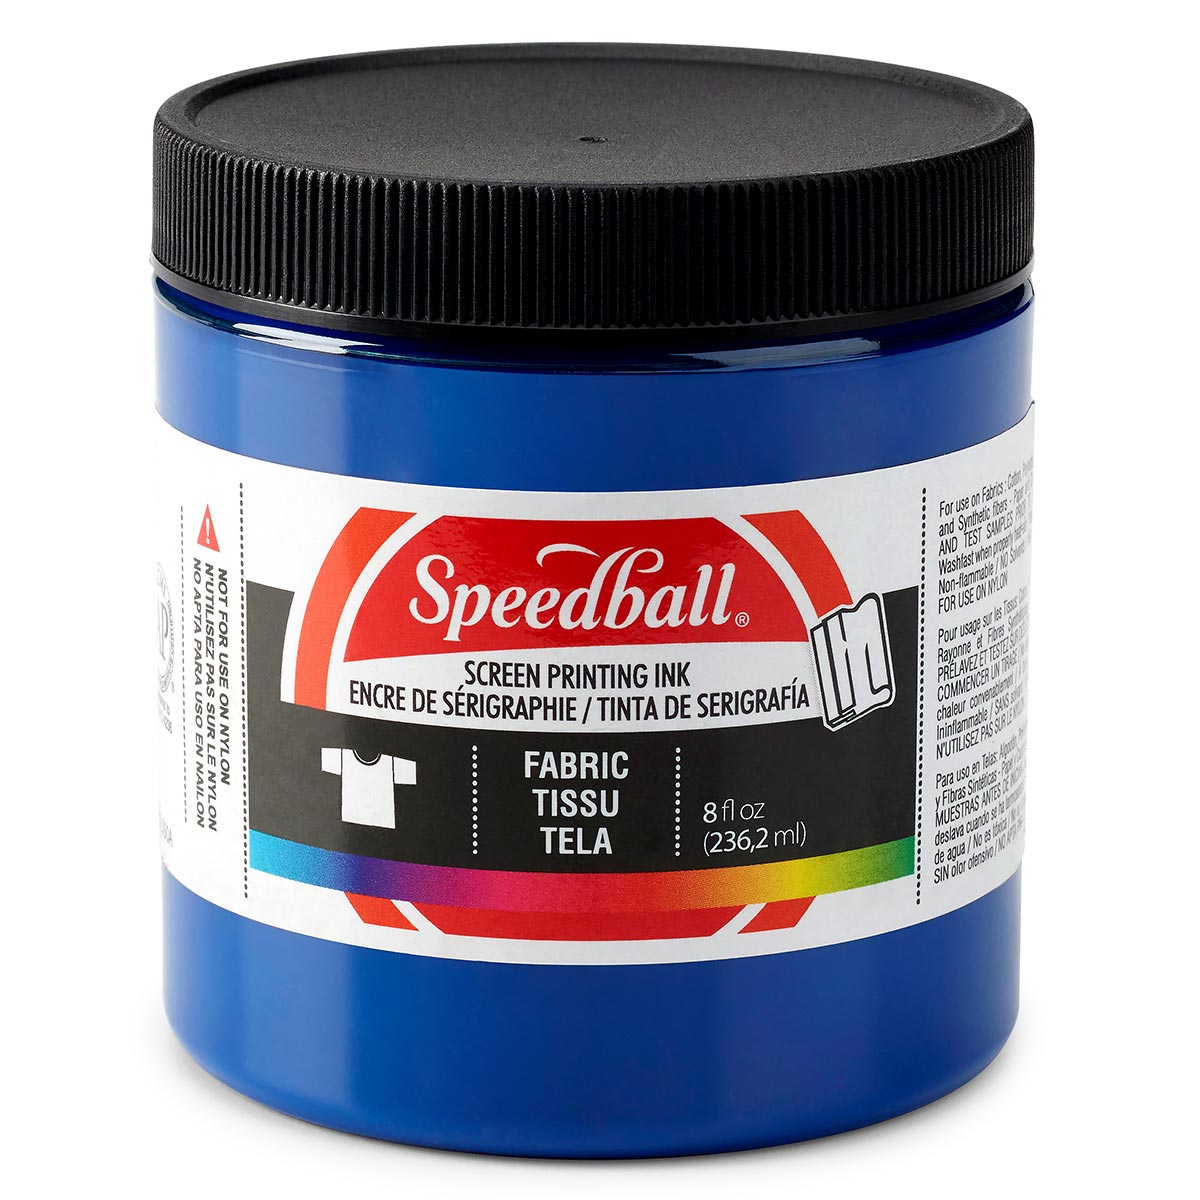 Speedball-Stoff Siebdruck Tinte 236ml (8oz) -Prozess Cyan